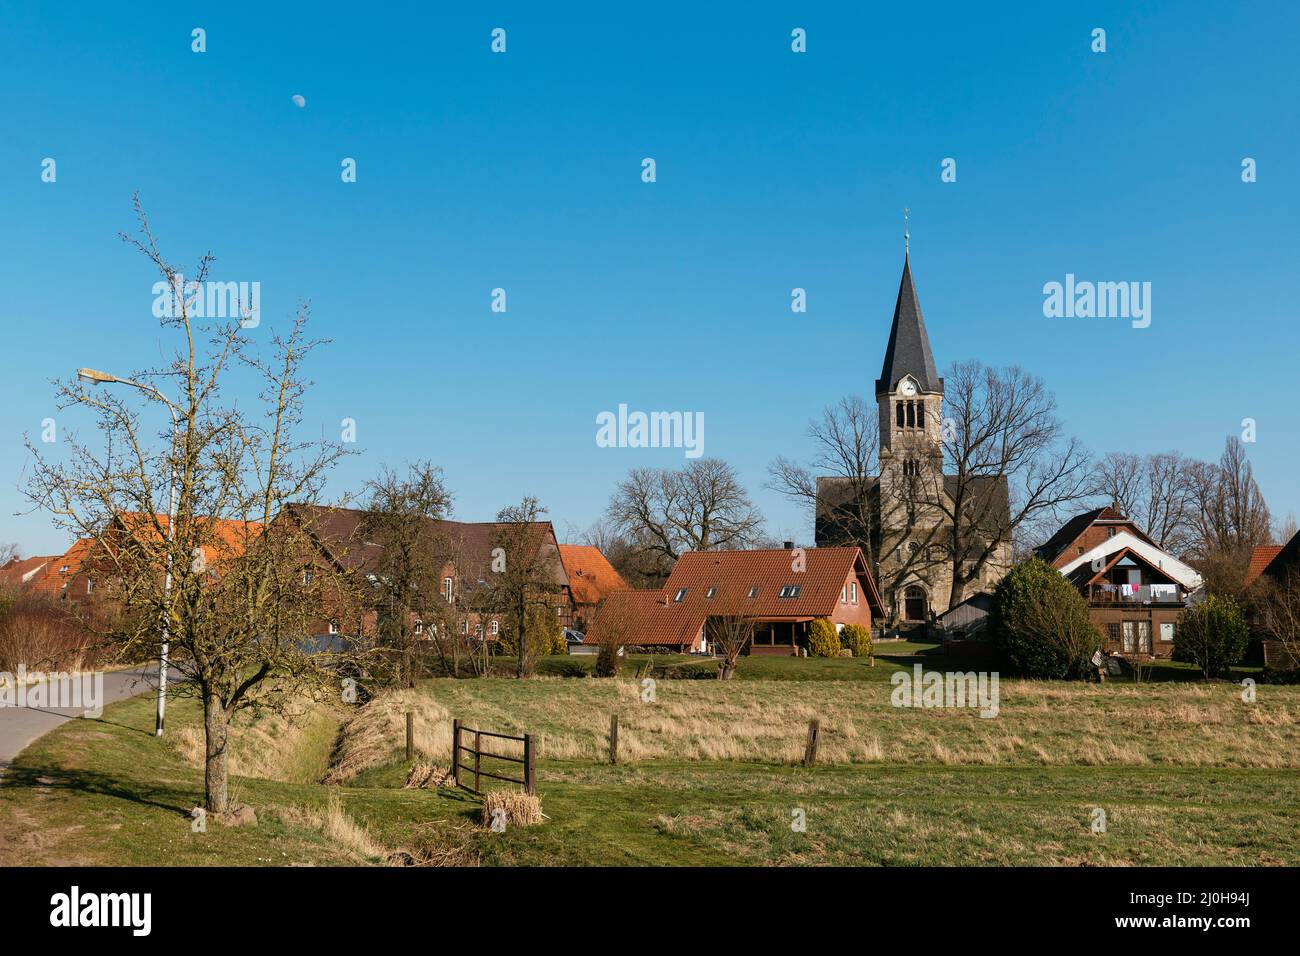 Blick auf die Frille, eine Gemeinde in der Nähe von Petershagen in Ostwestfalen mit evangelischer Kirche. Stockfoto